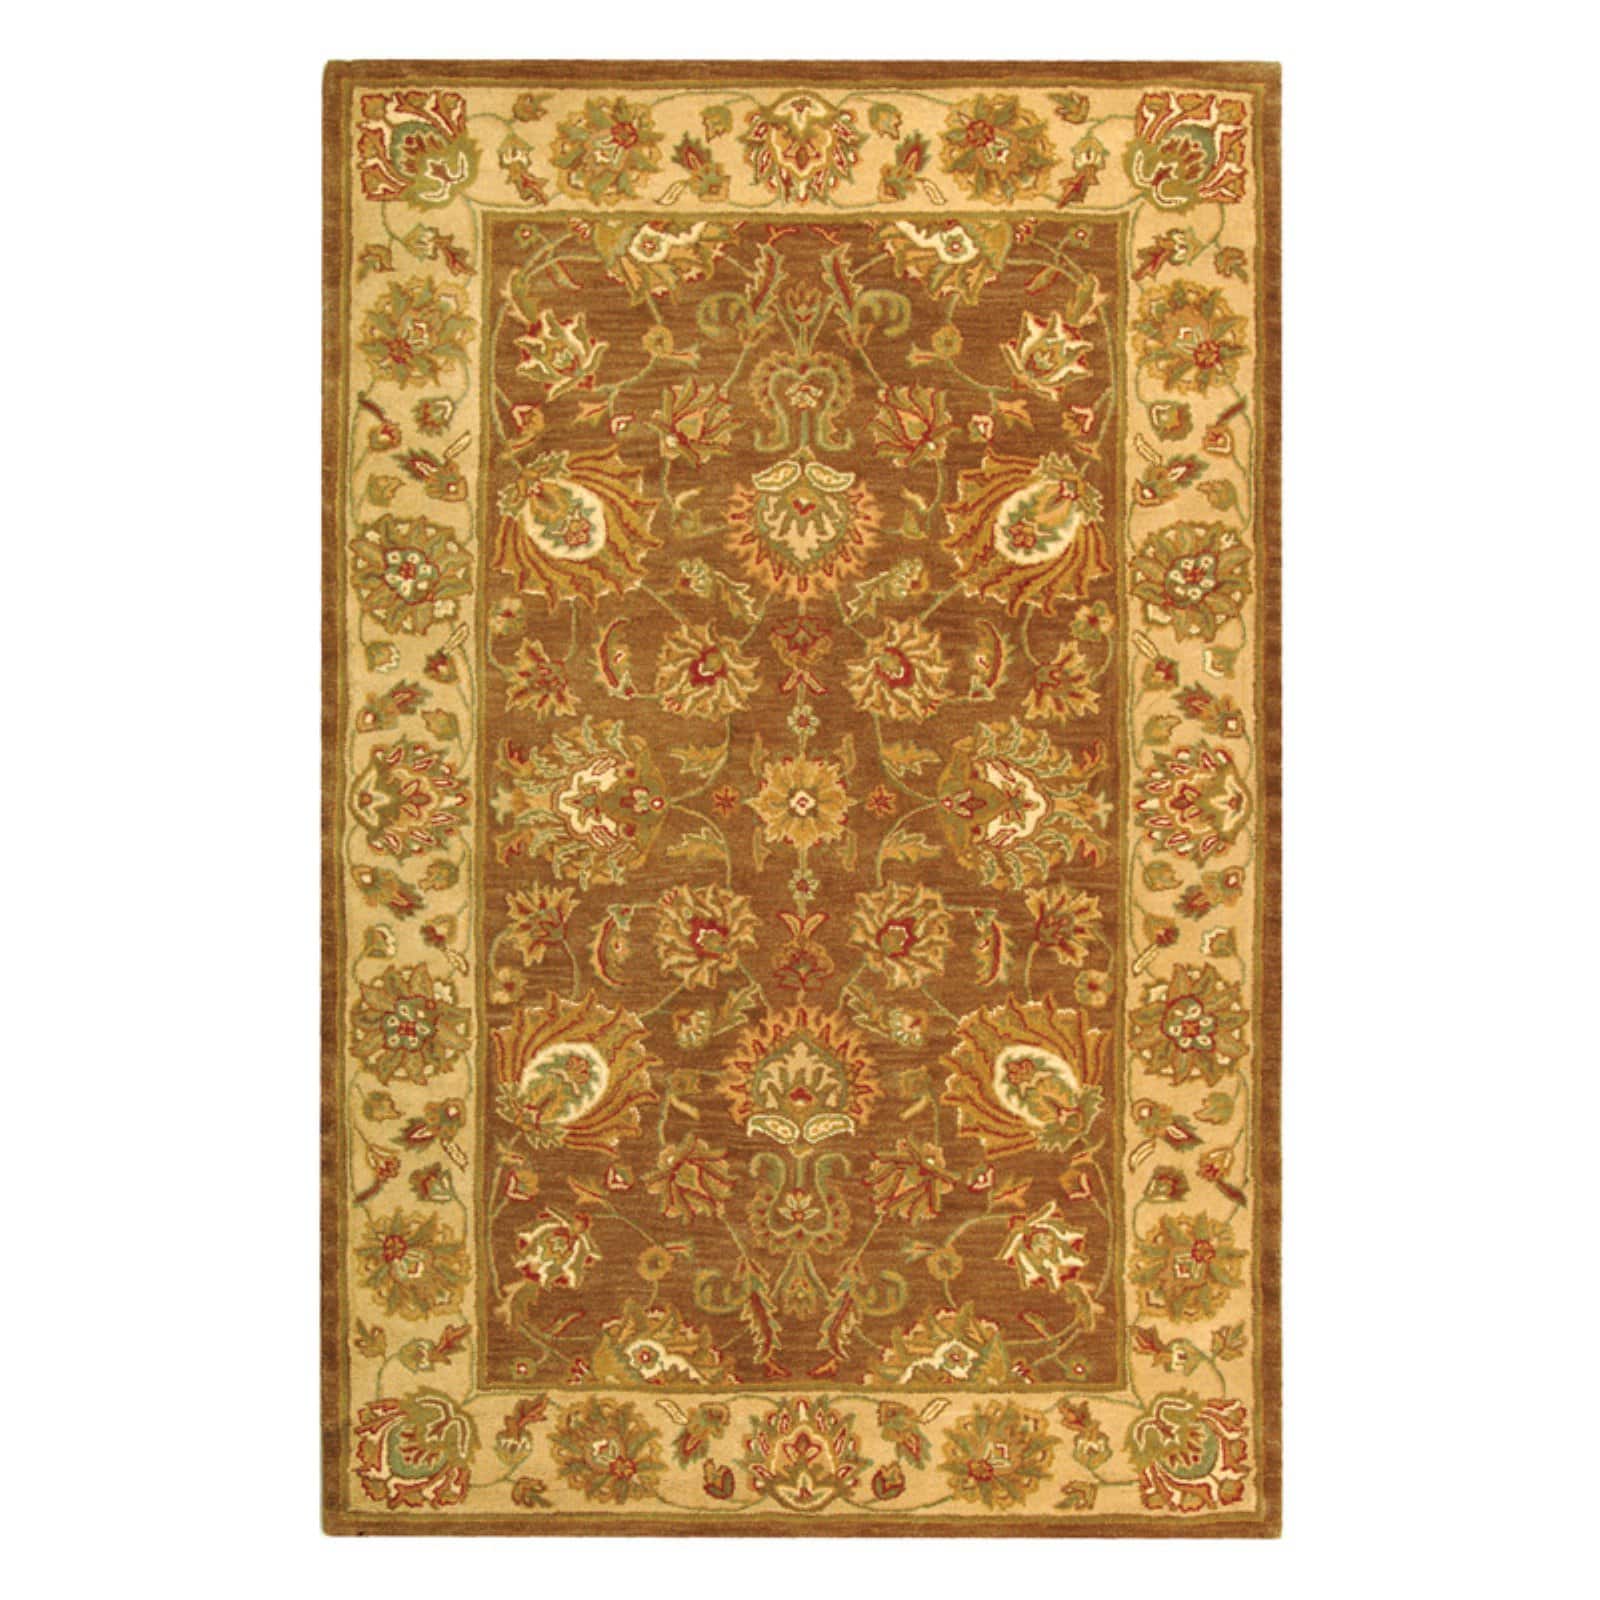 SAFAVIEH Heritage Regis Traditional Wool Runner Rug, Brown/Ivory, 2'3" x 8' - image 4 of 9